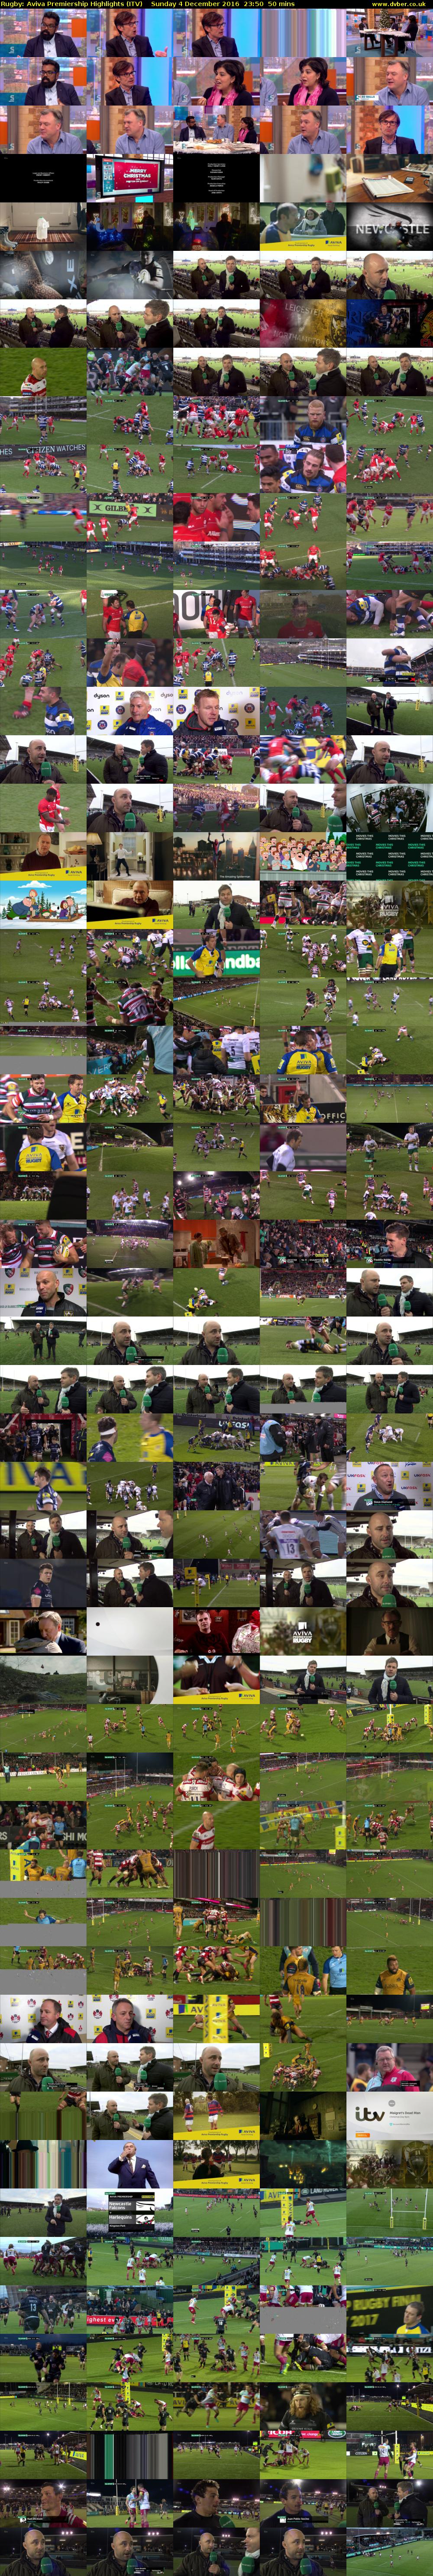 Rugby: Aviva Premiership Highlights (ITV) Sunday 4 December 2016 23:50 - 00:40